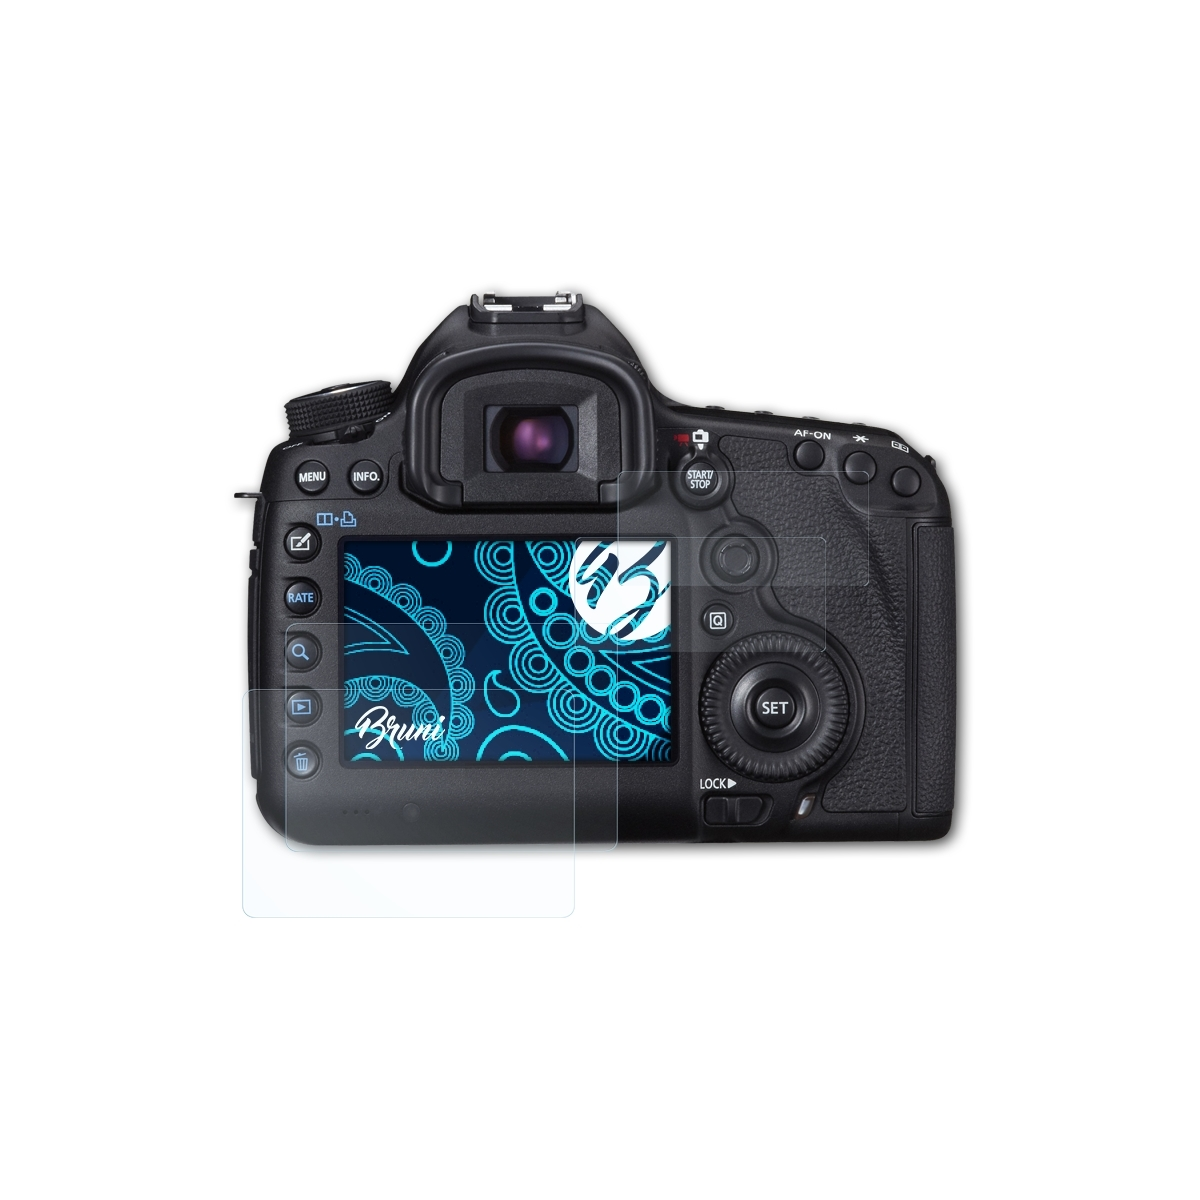 BRUNI 2x Schutzfolie(für III) Mark Canon EOS 5D Basics-Clear